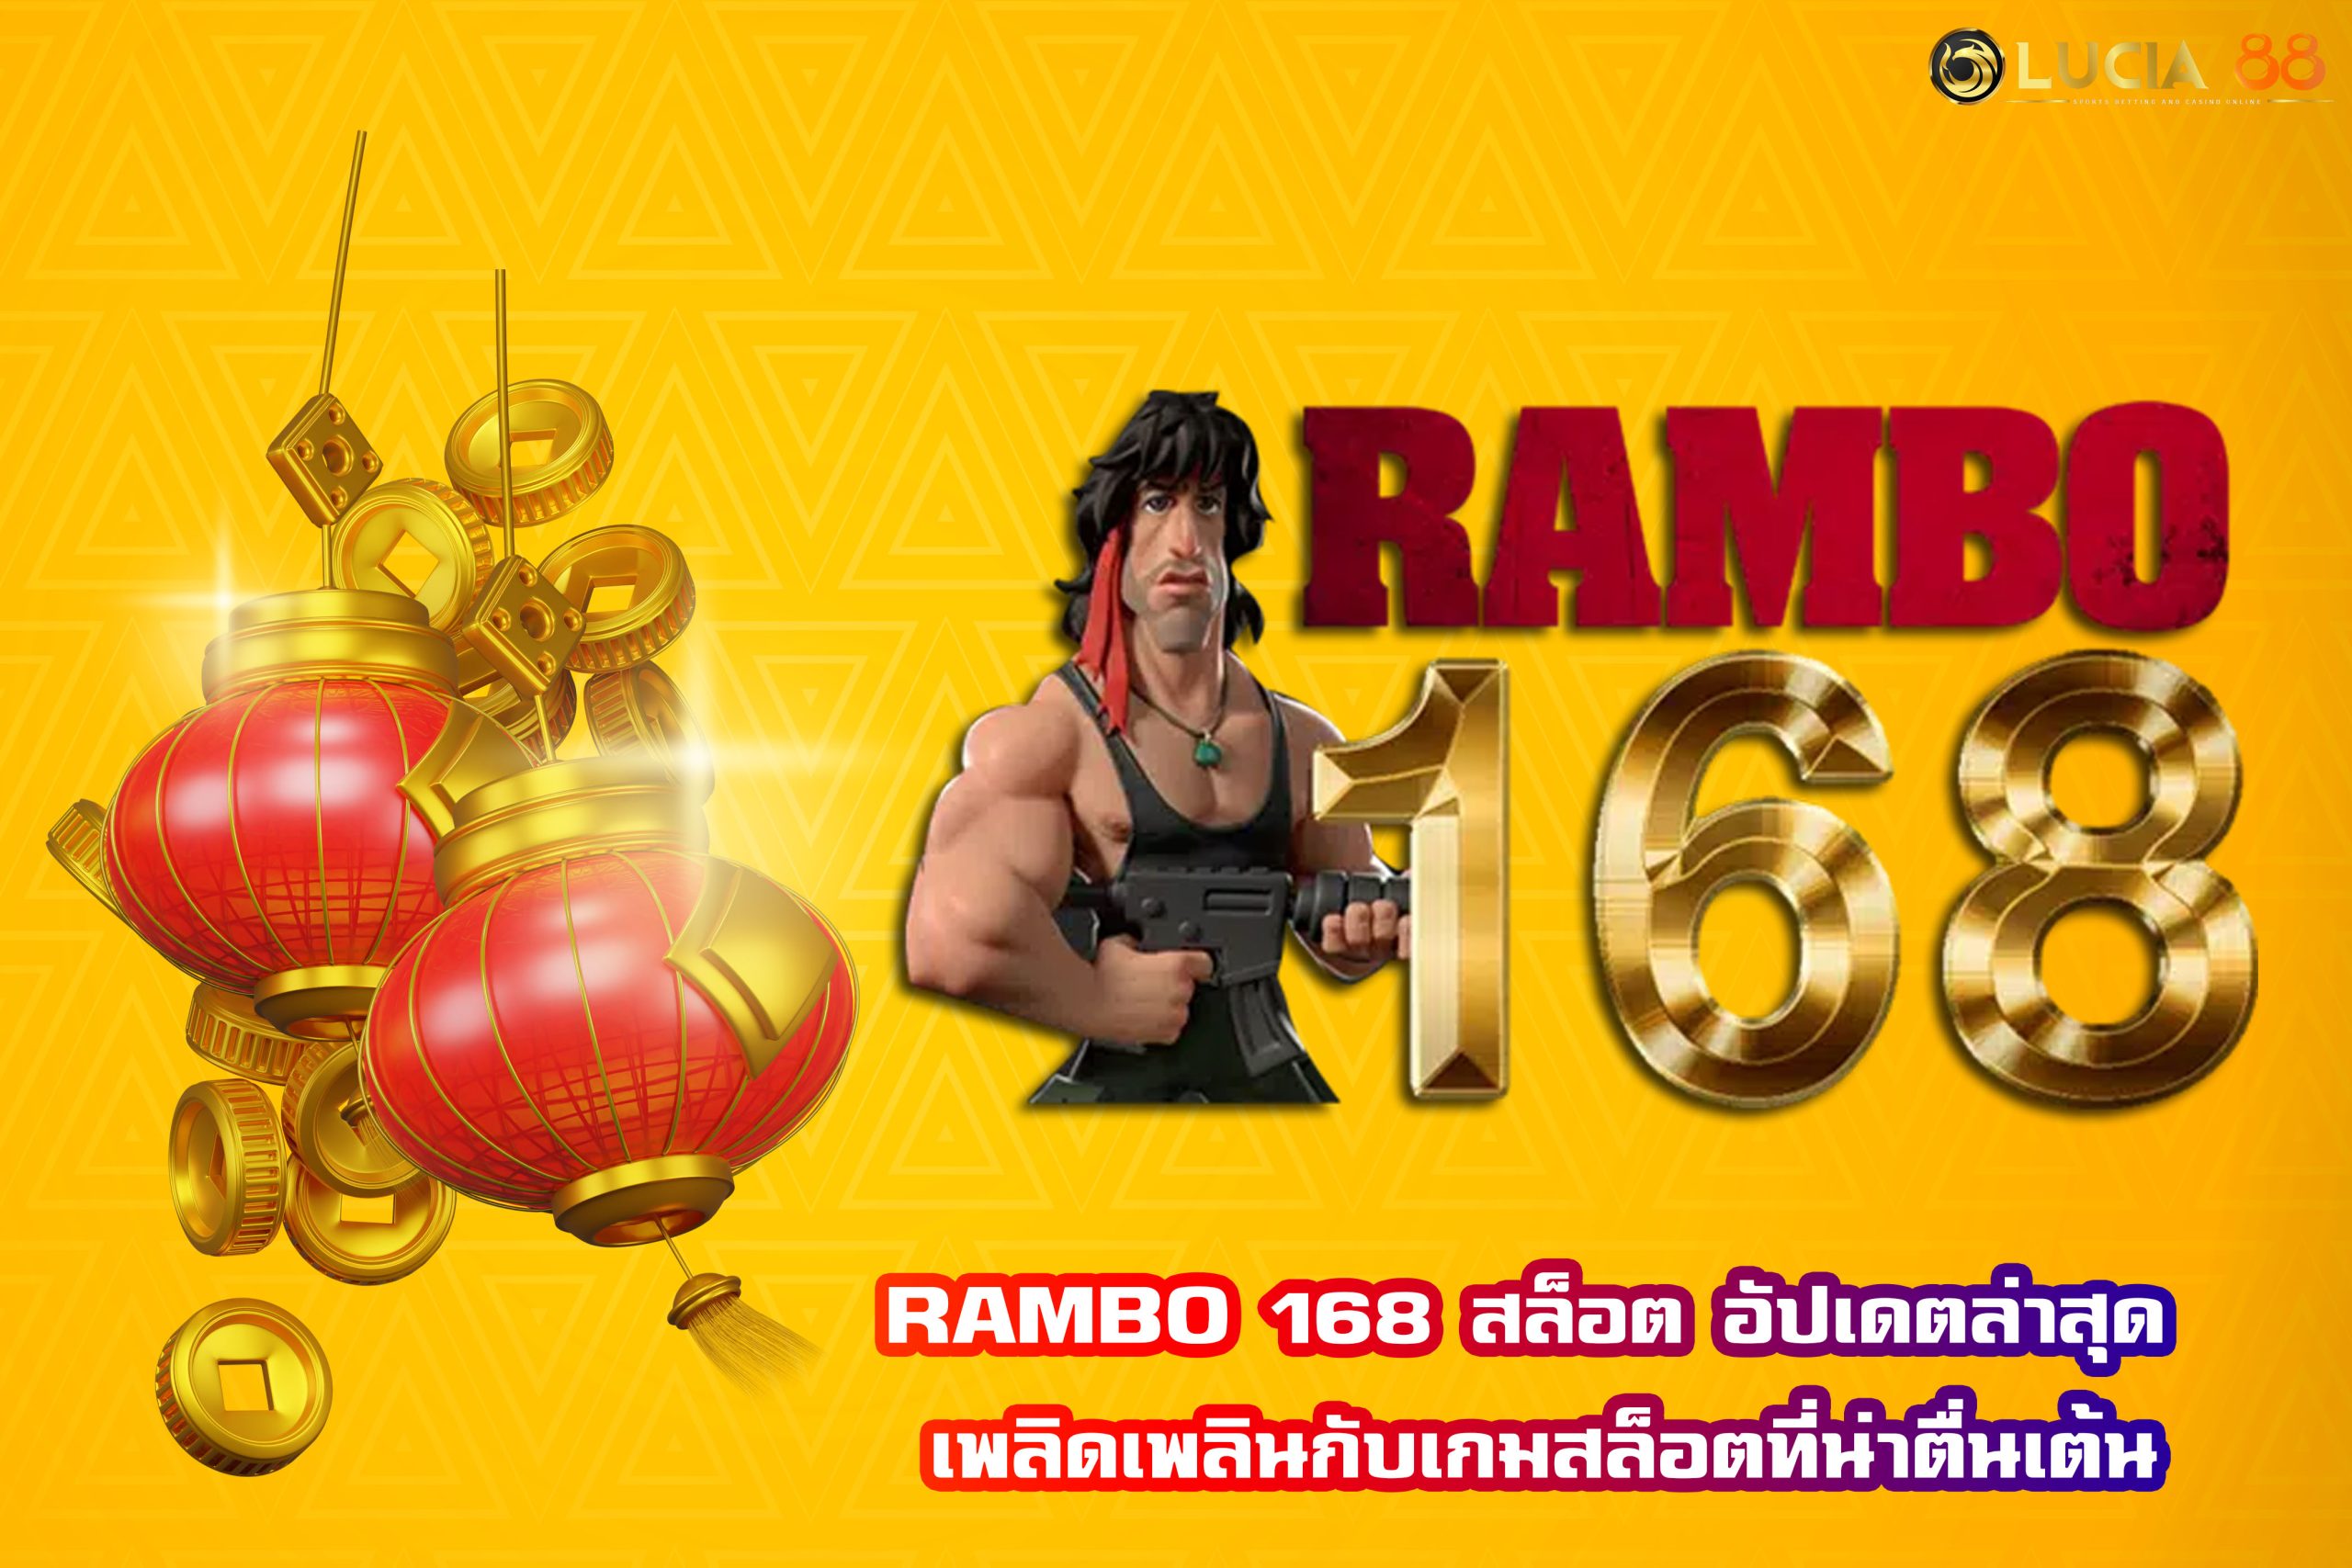 RAMBO 168 สล็อต อัปเดตล่าสุด เพลิดเพลินกับเกมสล็อตที่น่าตื่นเต้น